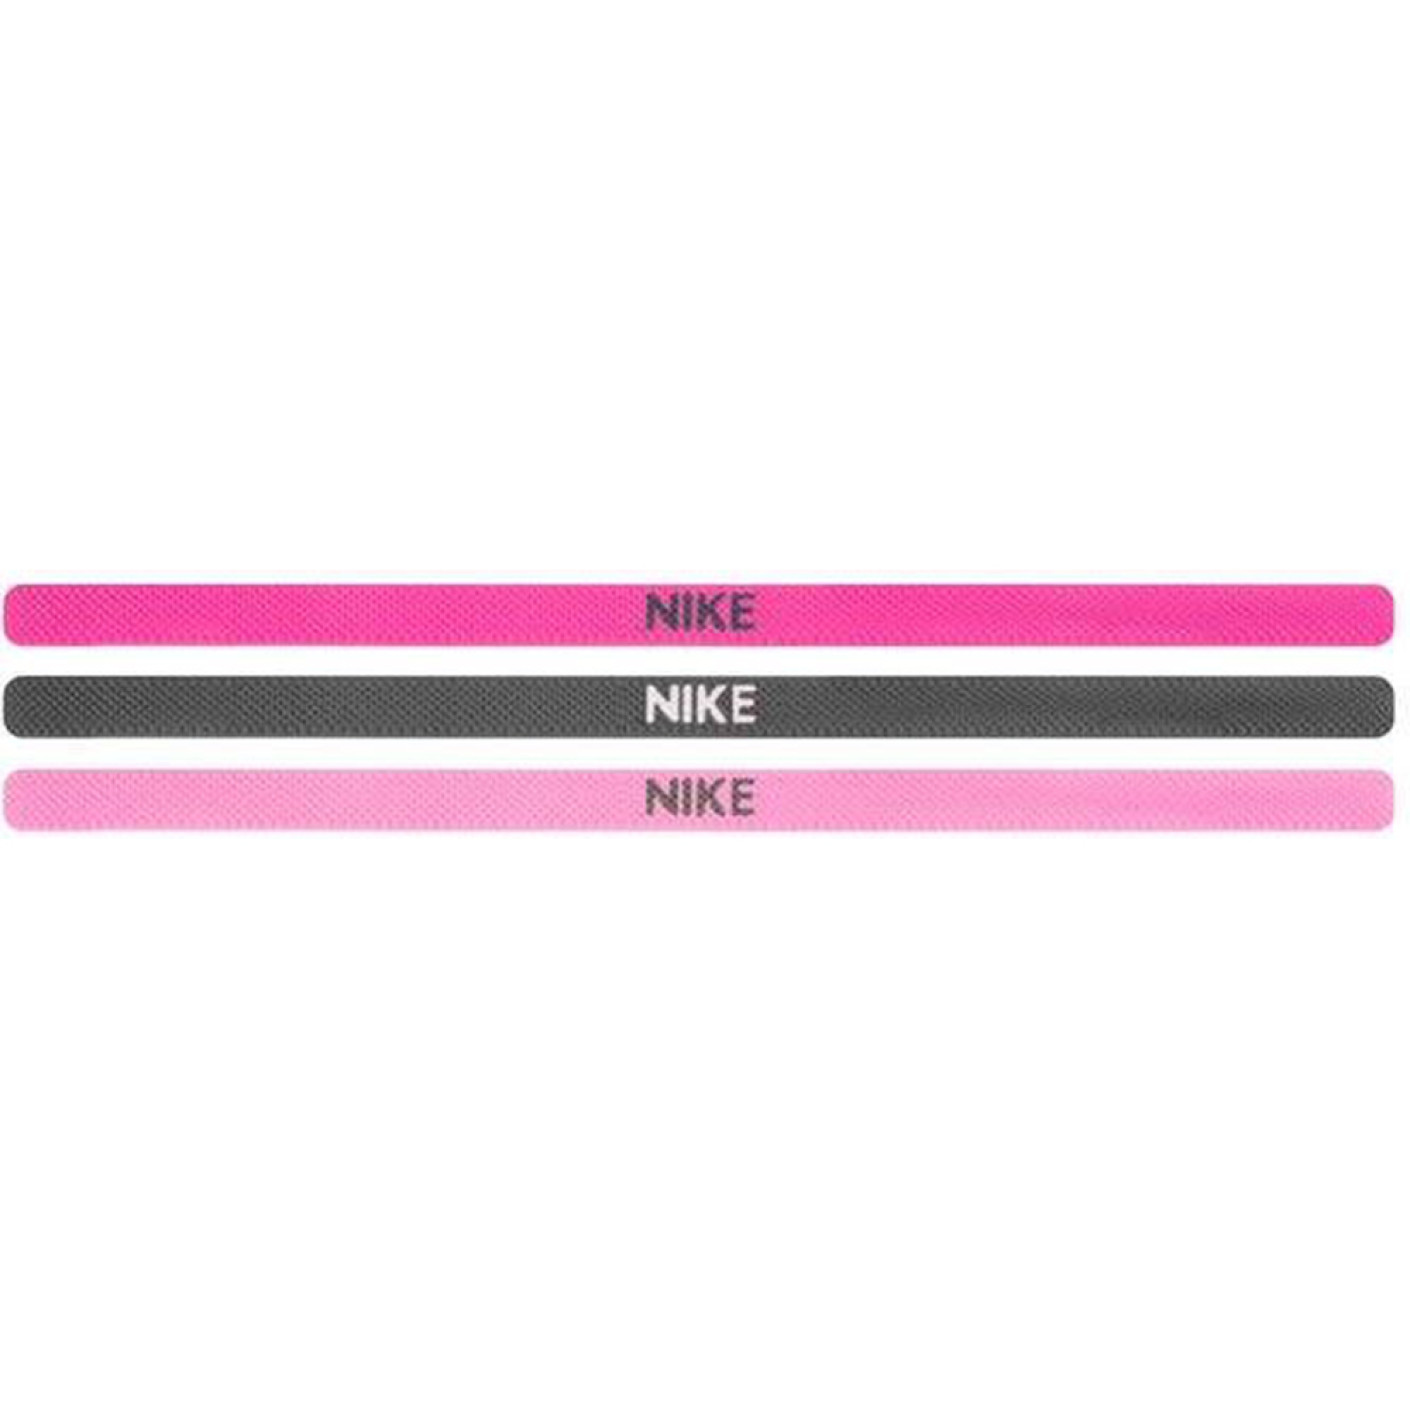 Nike Elastic Haarbanden 3 pack Paars Roze Grijs